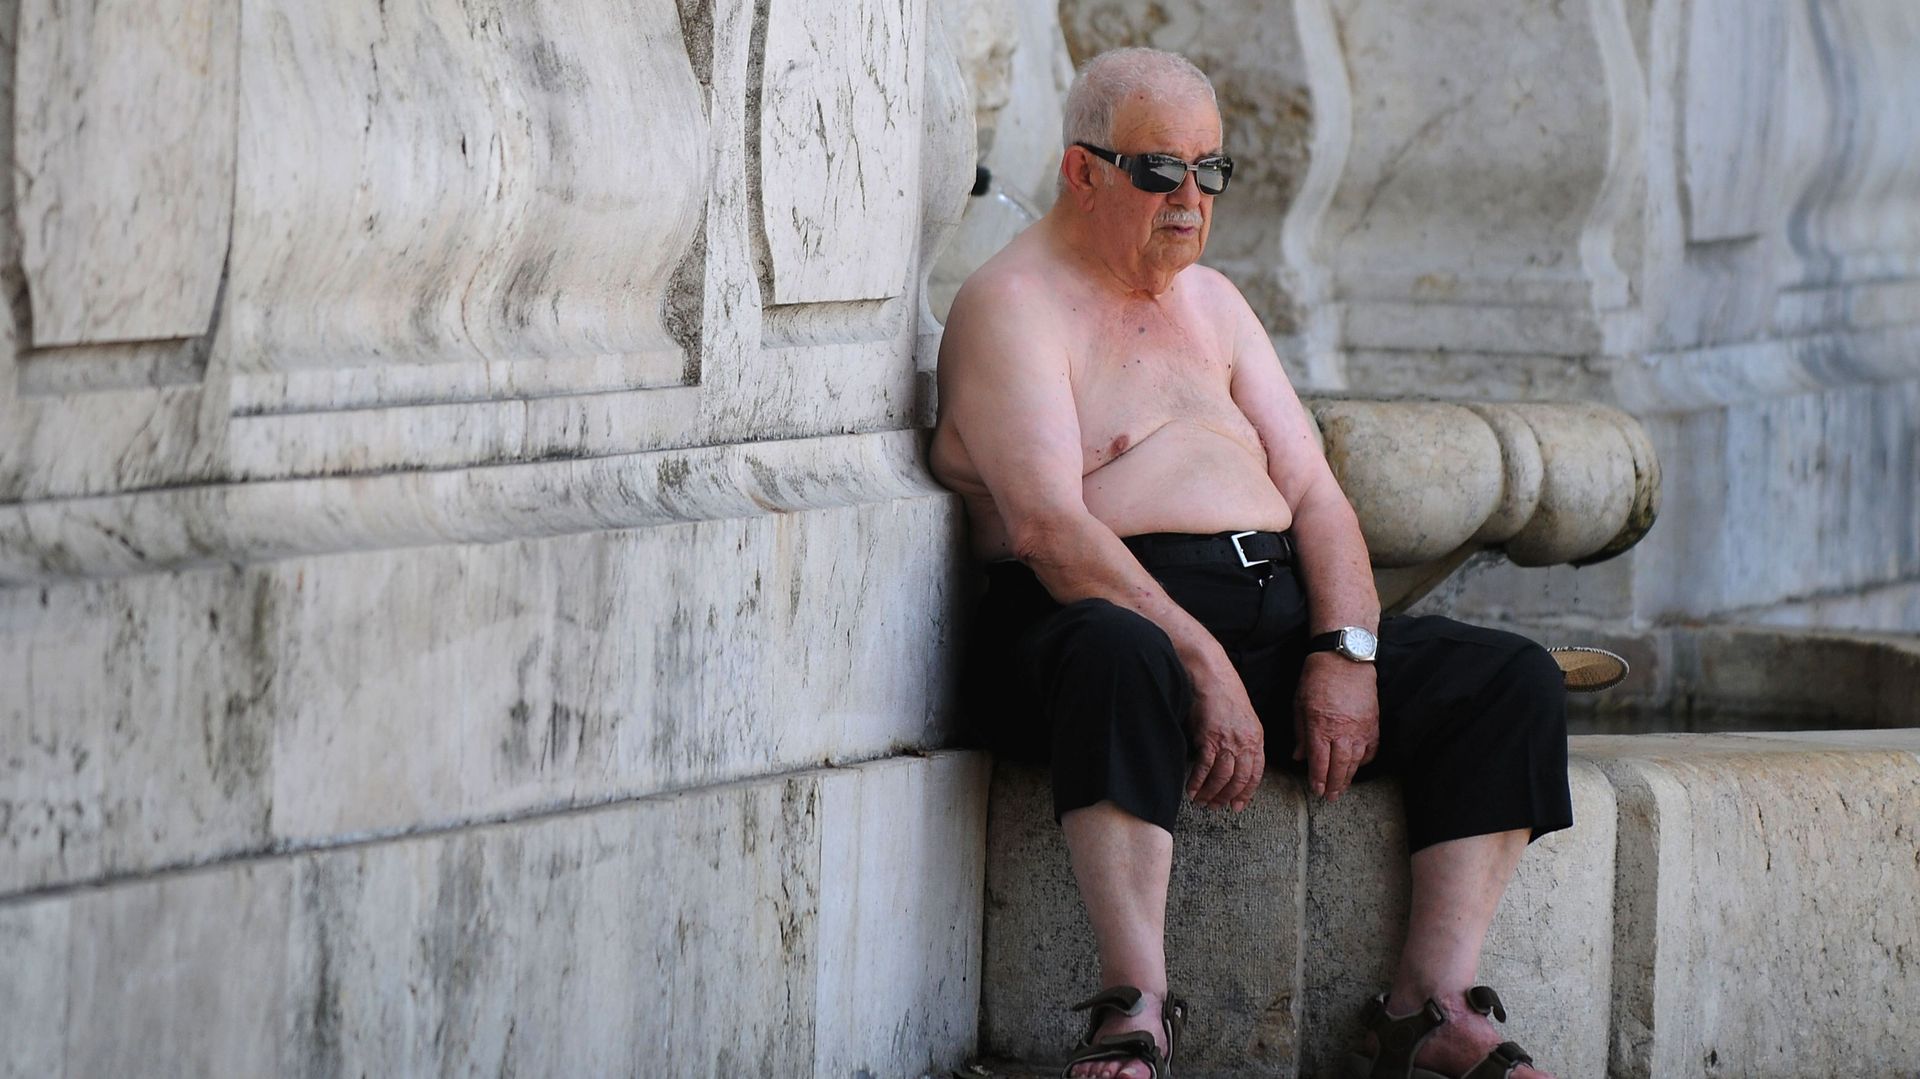 Un homme épuisé par la chaleur en Espagne